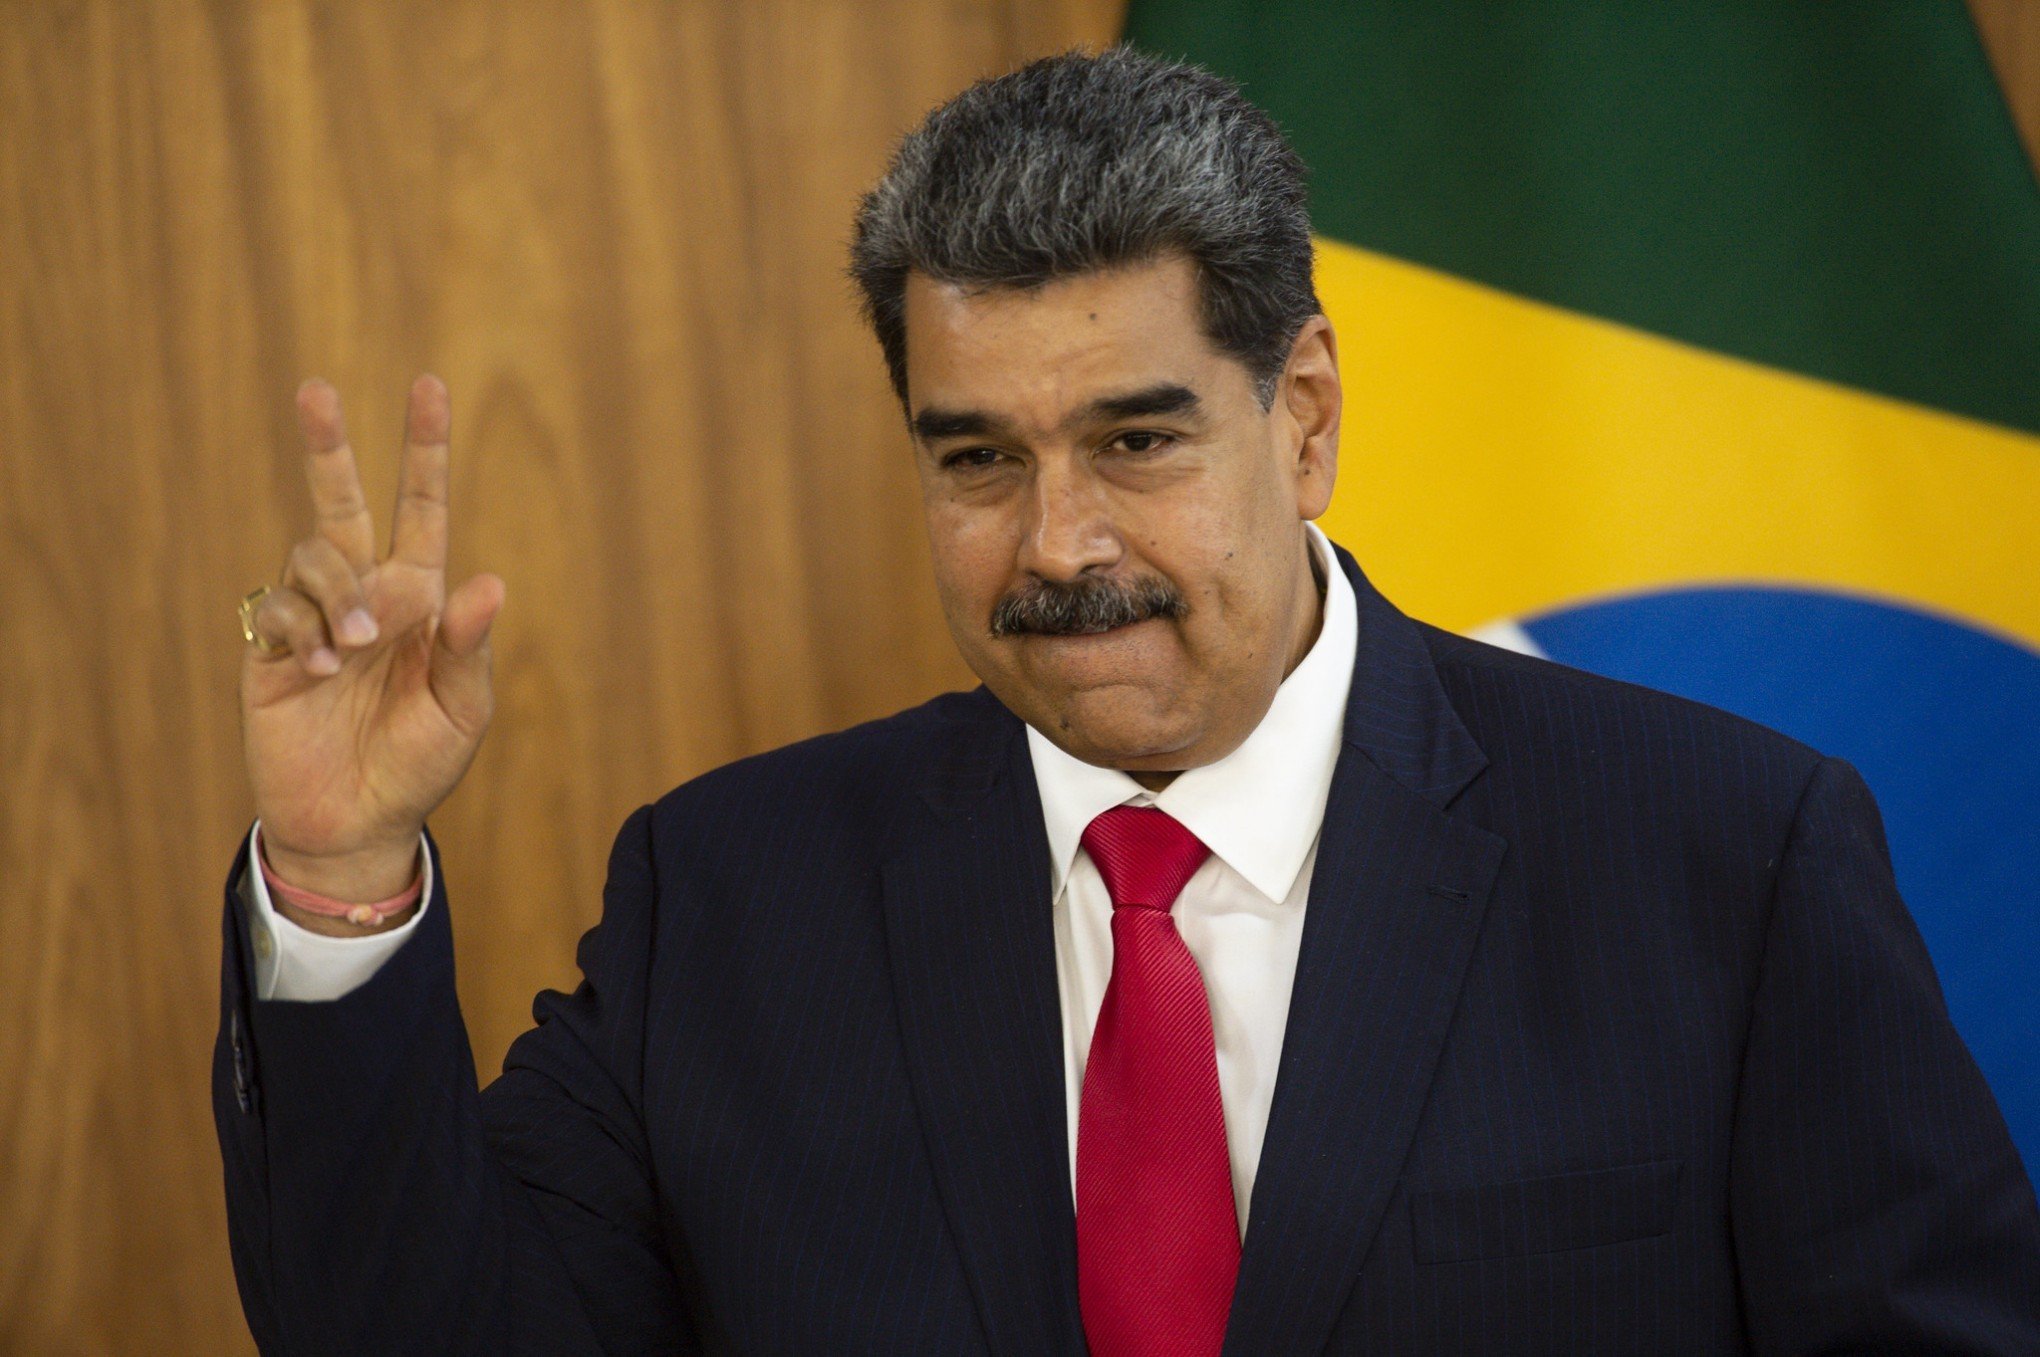 ESSEQUIBO: Qual o interesse da Venezuela em anexar território da Guiana? Há risco de guerra?